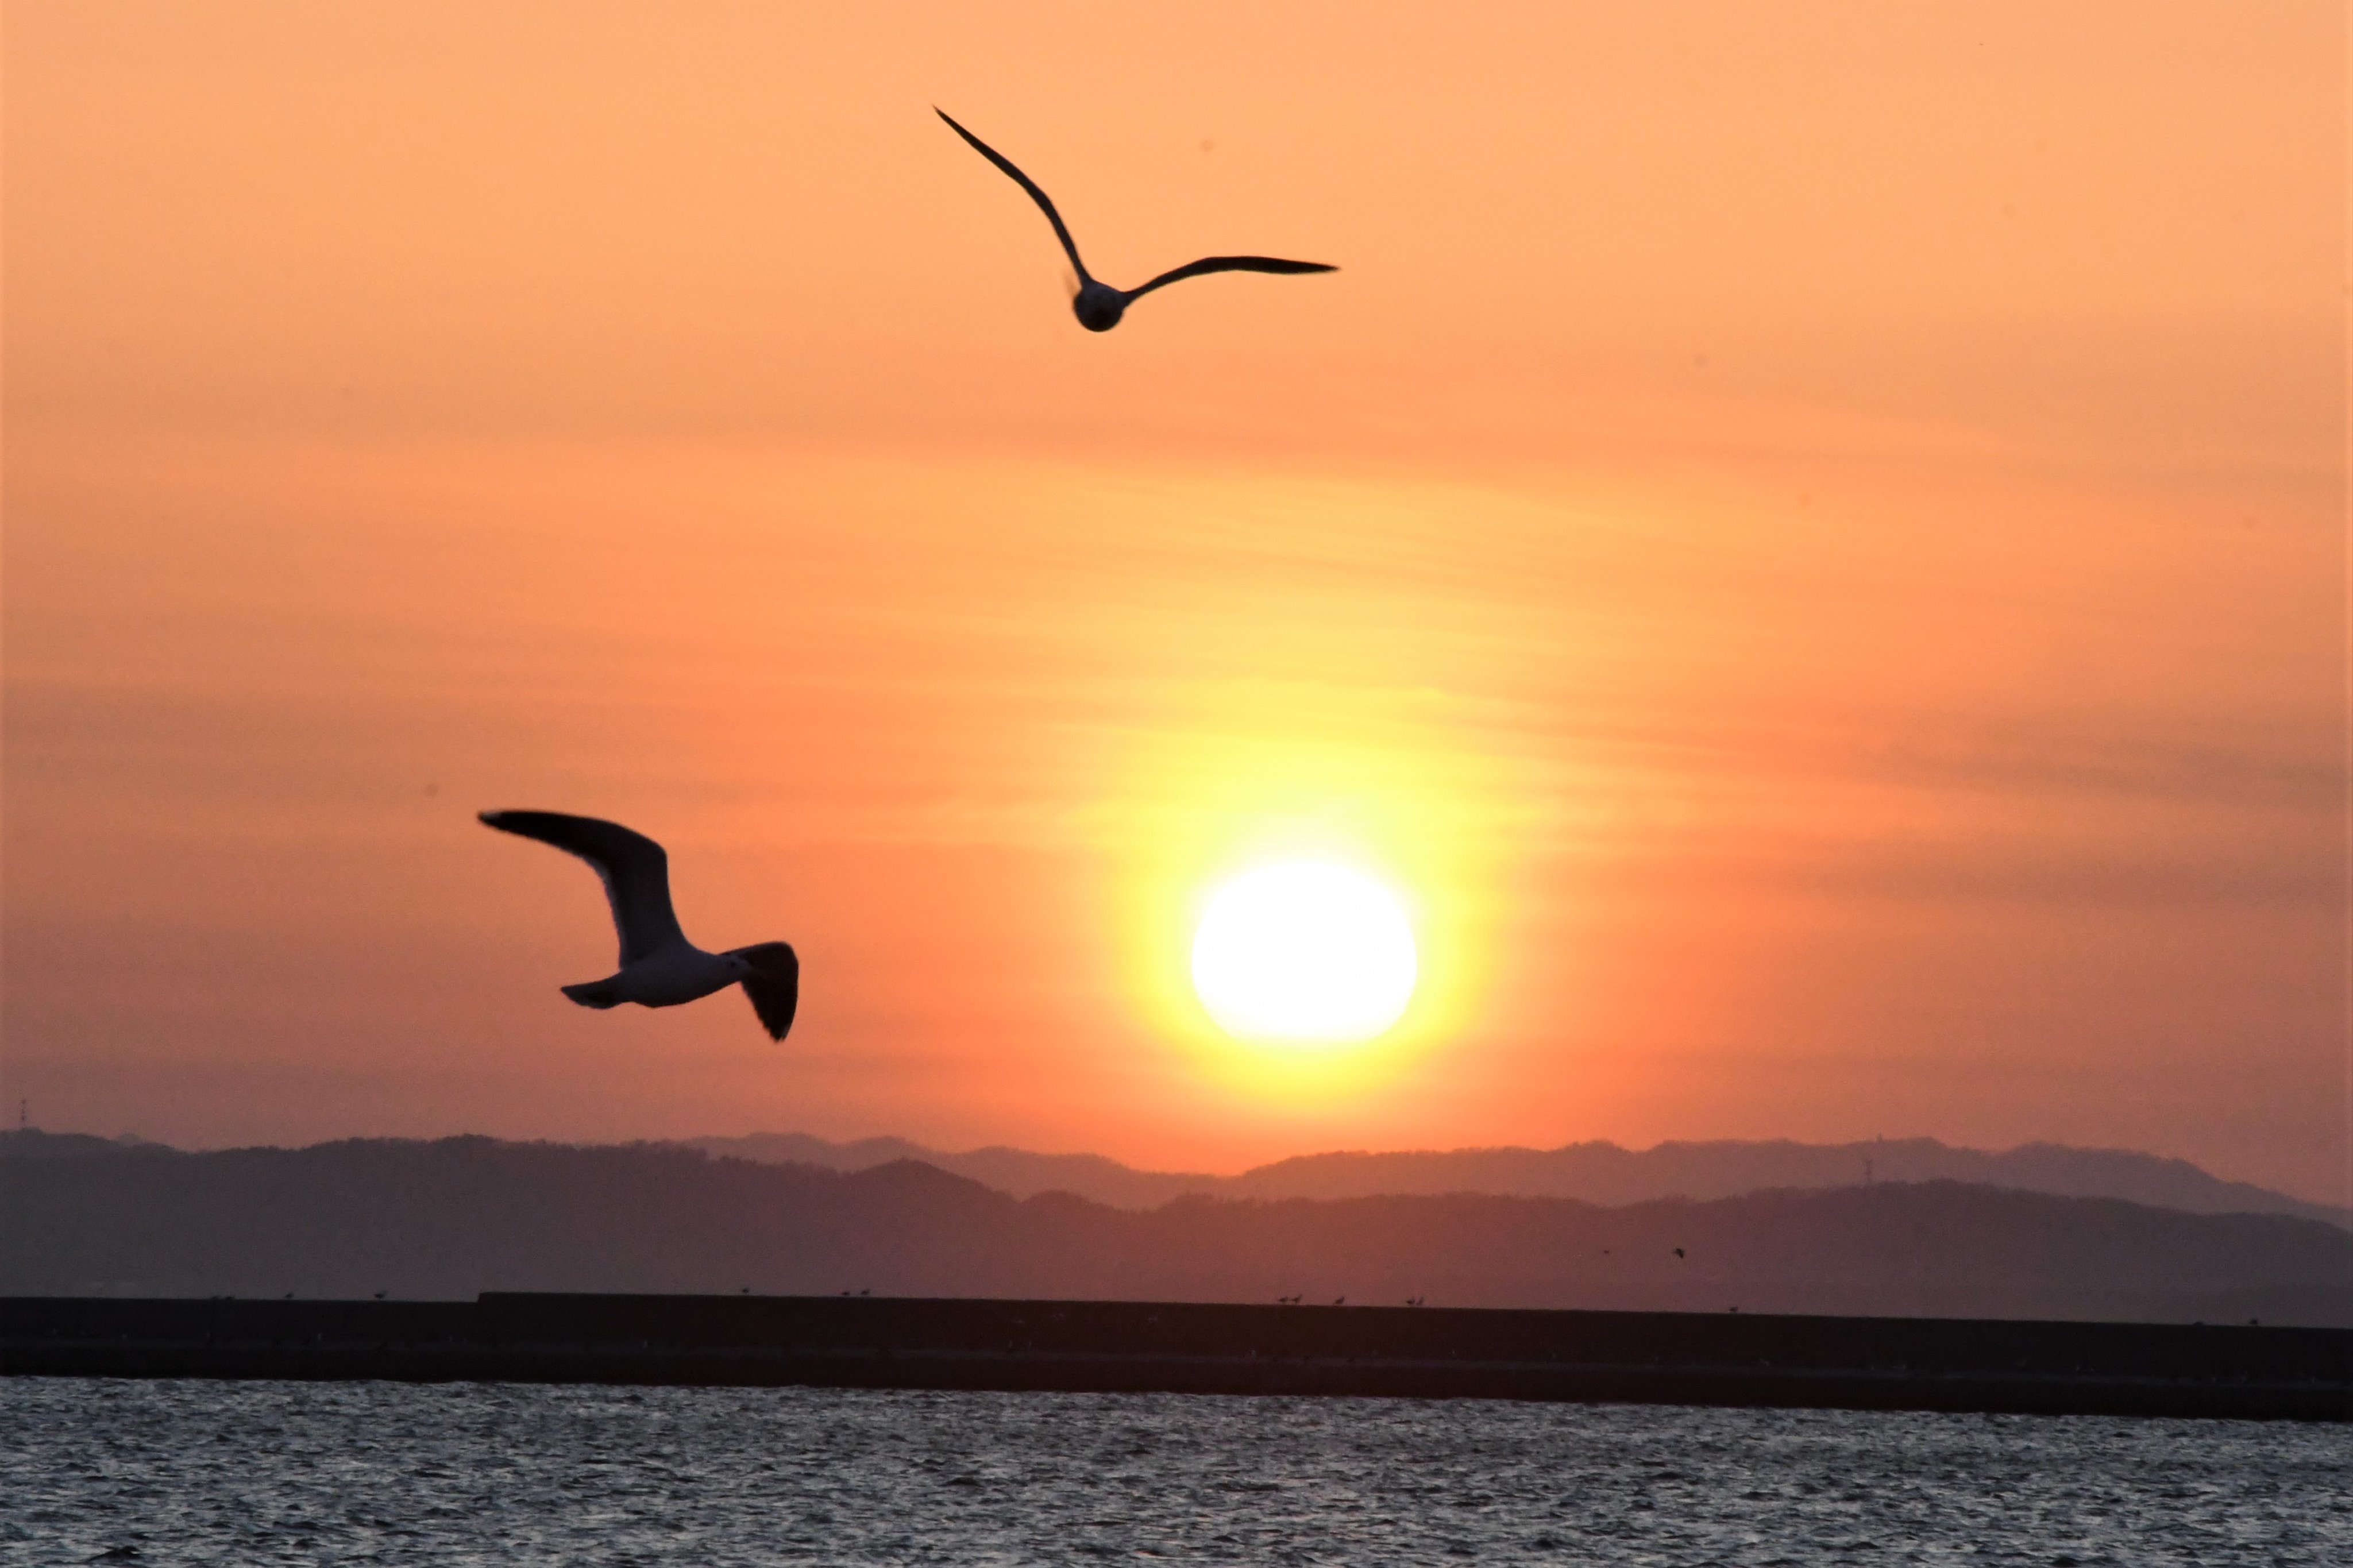 ミスターm 釧路港の夕陽 を撮りに埠頭へ 昼間は暖かかったのに夕方の海風が冷たすぎ 丁度カモメが２羽写り込んだのでタイトルは 100 双かもめ なんて どうでしょう 03 26 釧路 釧路港 夕陽 夕焼け T Co 9tt3dn6fhp